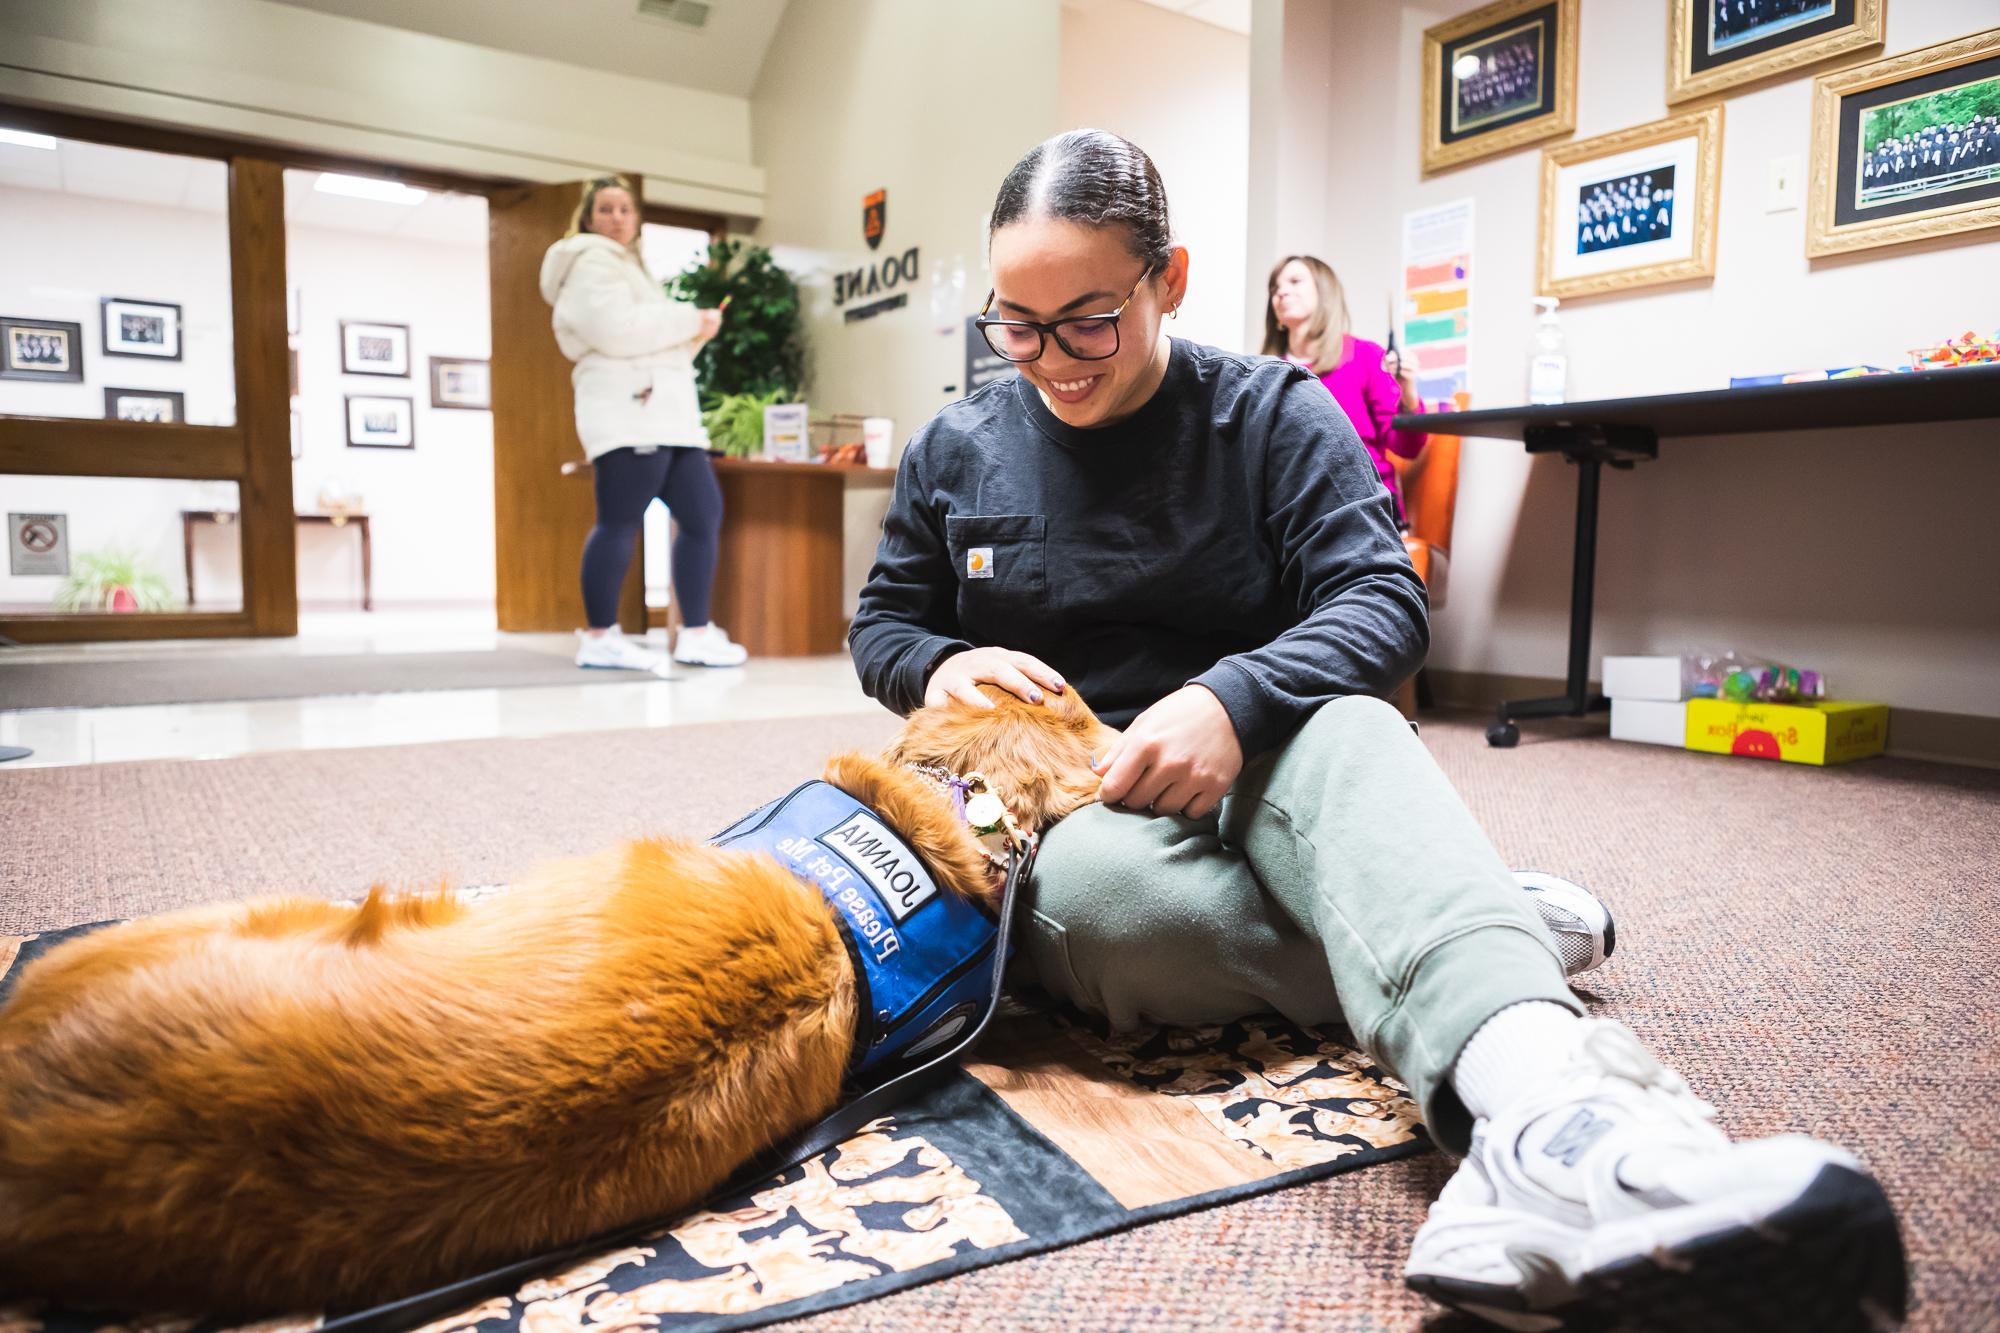 心理咨询艺术硕士学生Ekianet Tamayo宠物乔安娜, a trained therapy dog, 在林肯的课间休息时.